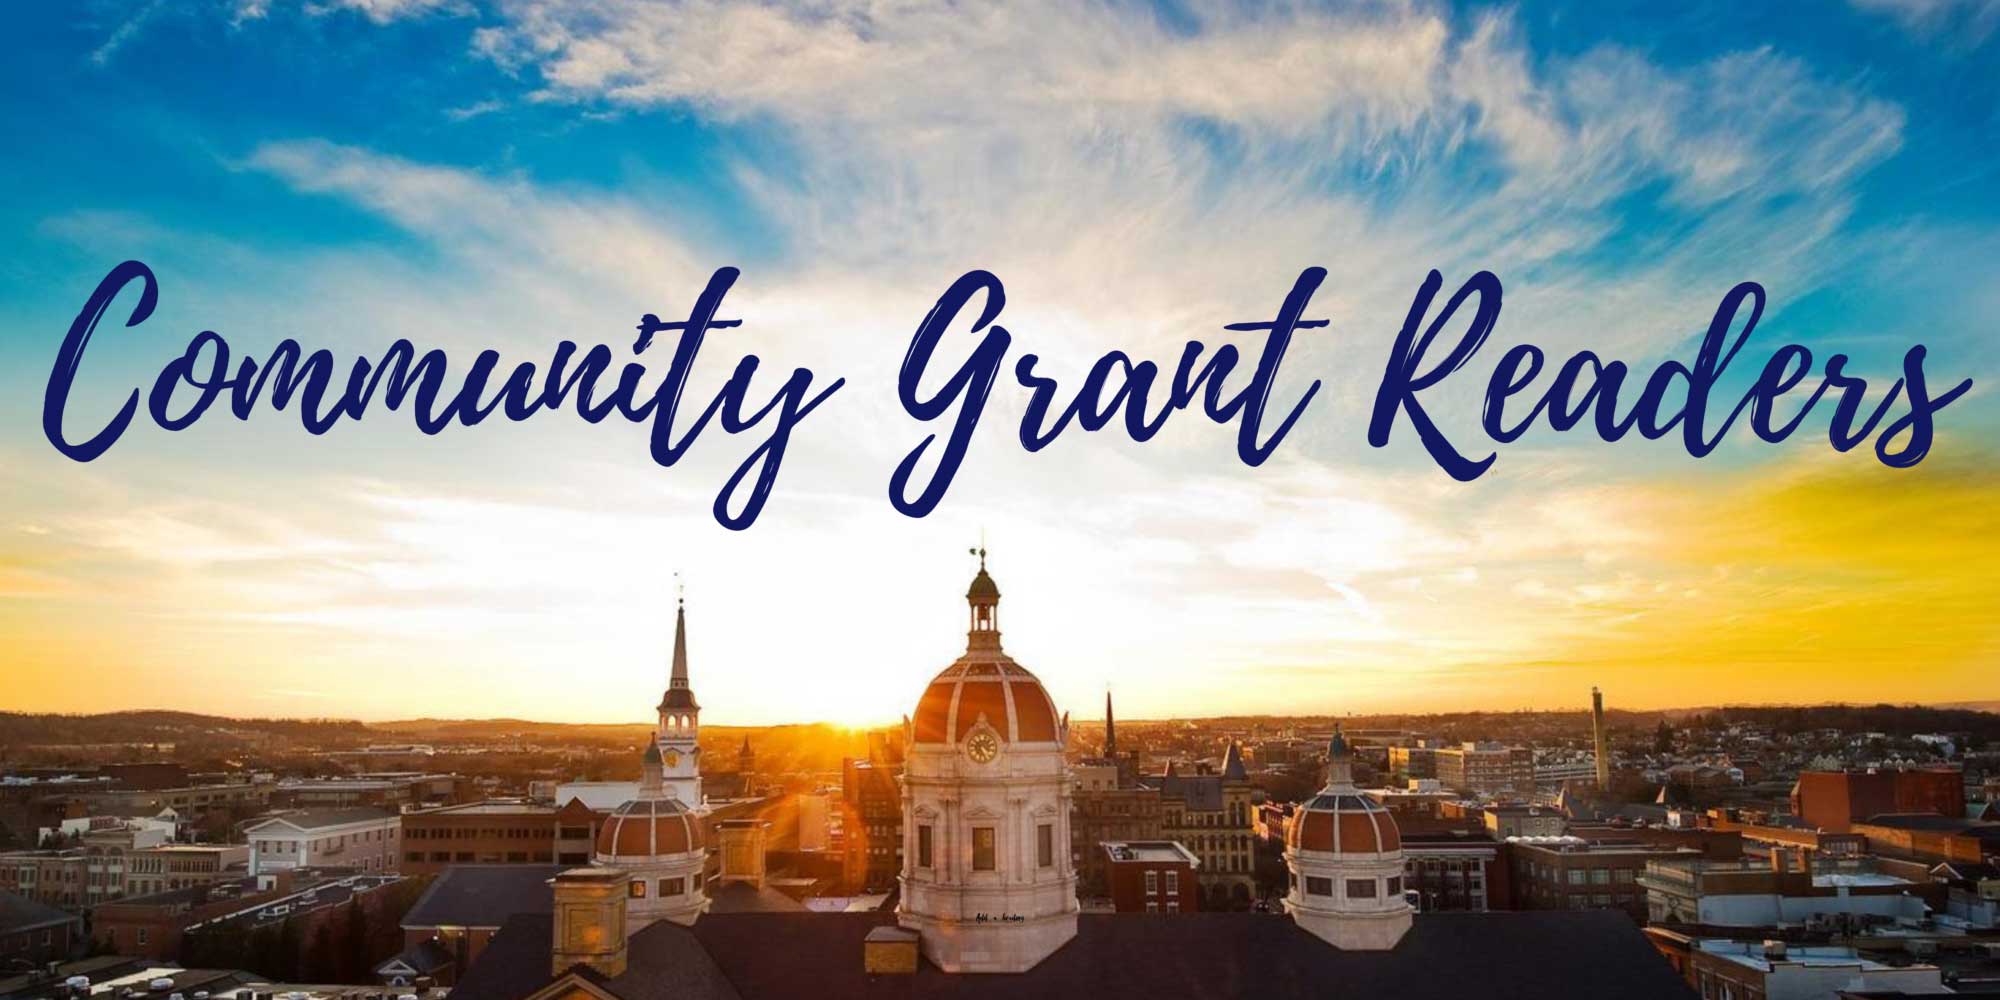 Community Grant Reader: Sharon Christ